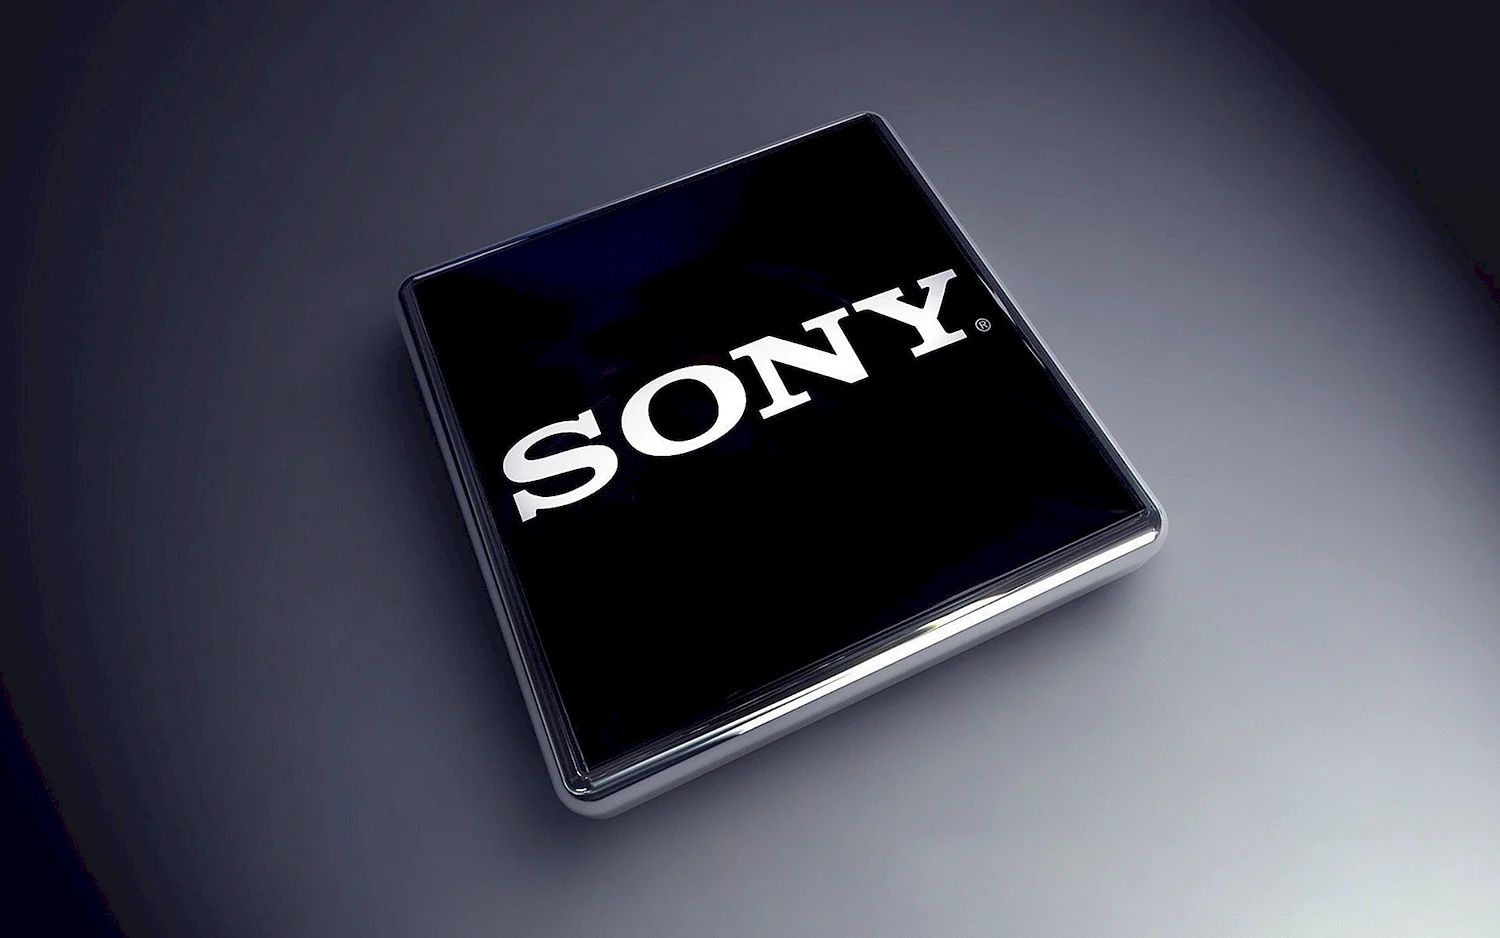 Sony бренд